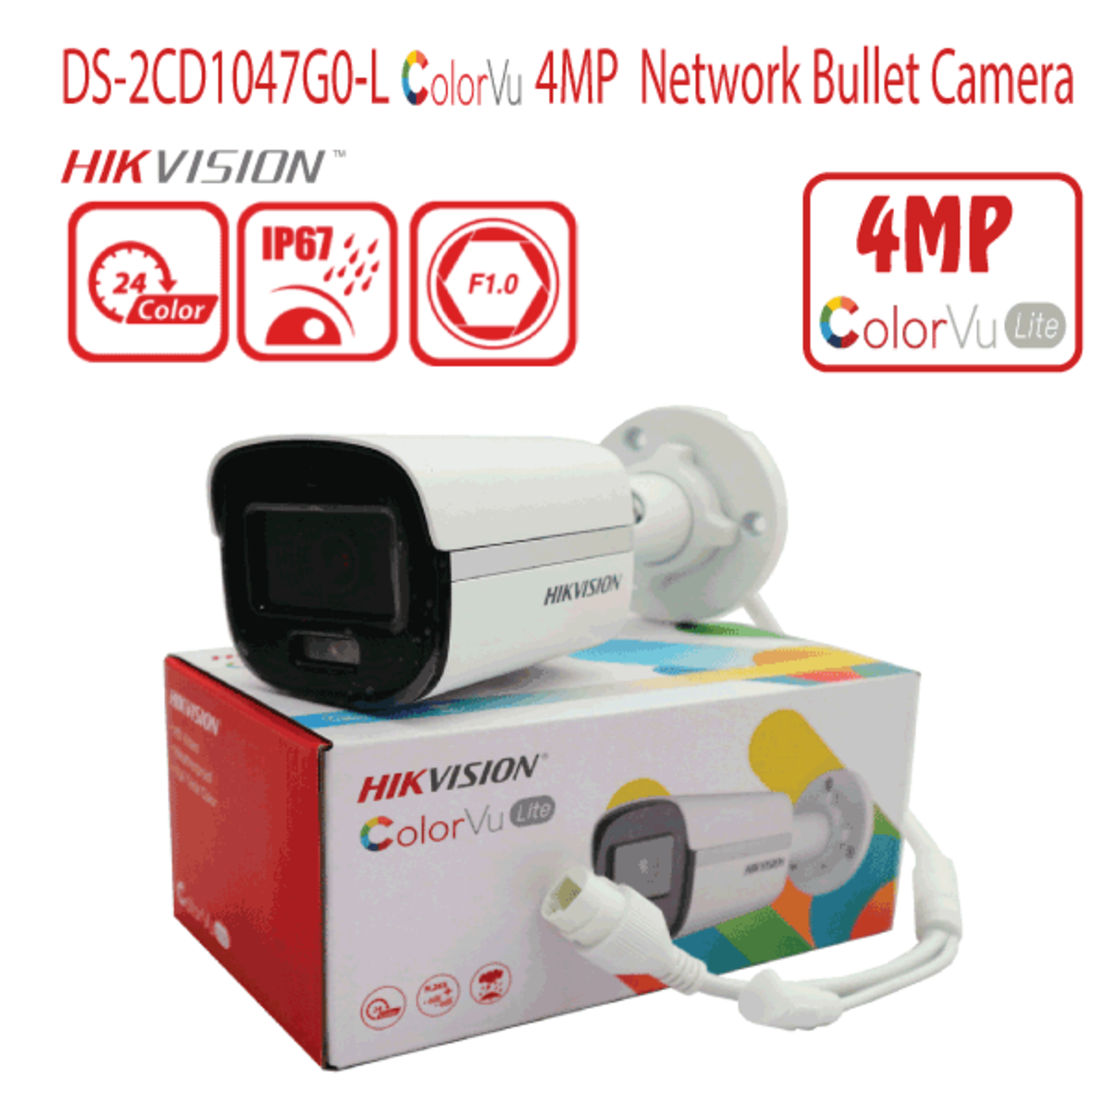 DS-2CD1047G0-L - מצלמת צינור IP ColorVu באיכות 4MP מבית Hikvision